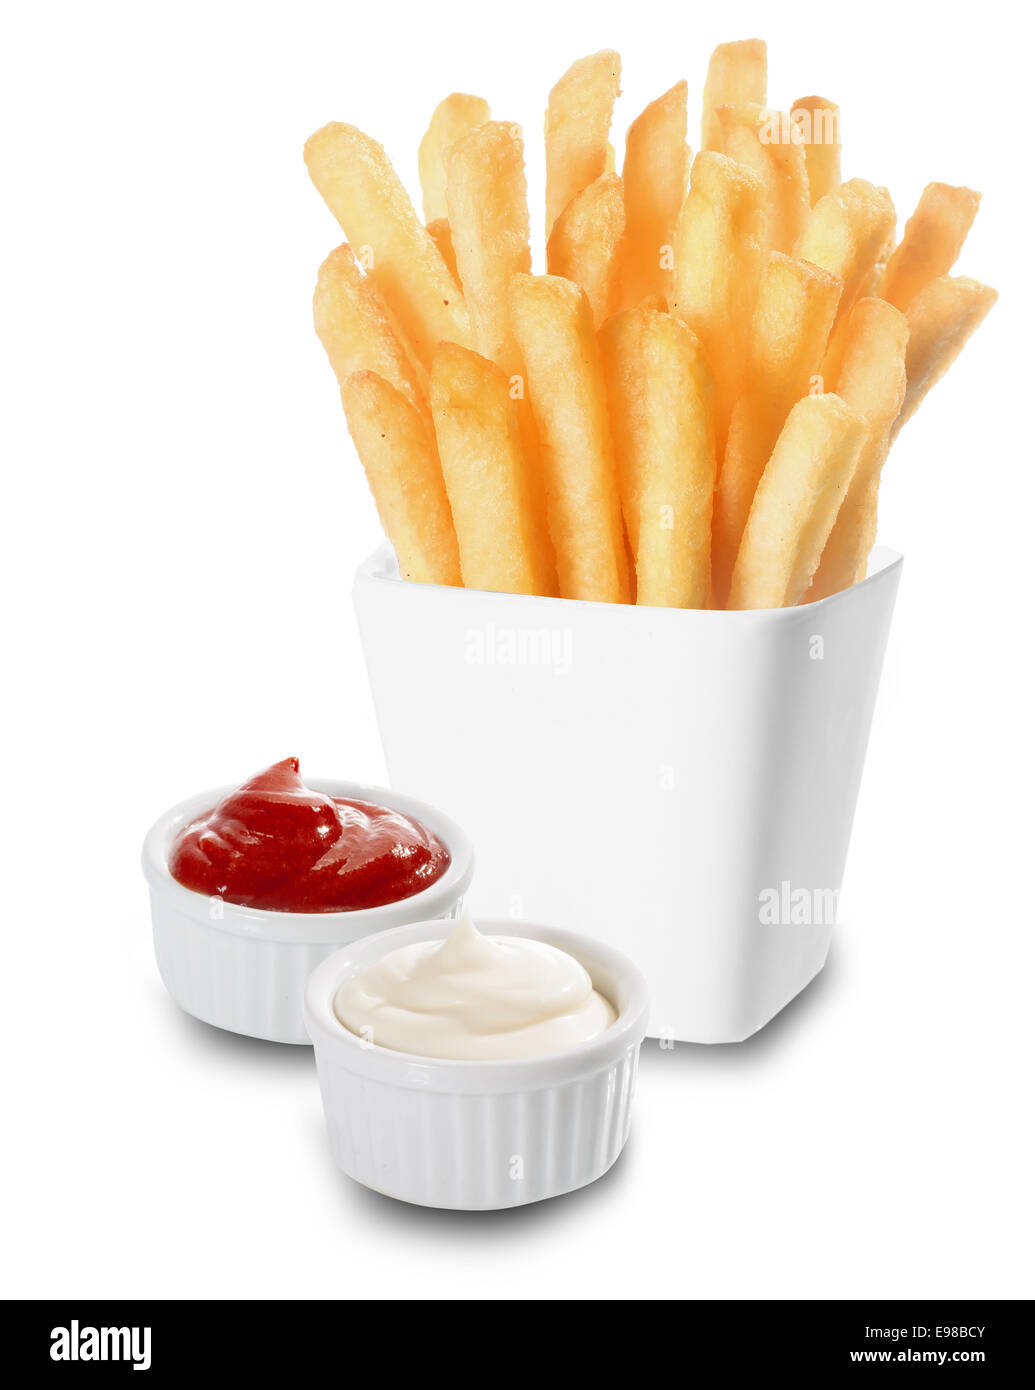 Crisp golden Frites ou chips de pomme de terre frit servi avec des récipients individuels de mayonnaise crémeuse et ketchup sur fond blanc Banque D'Images